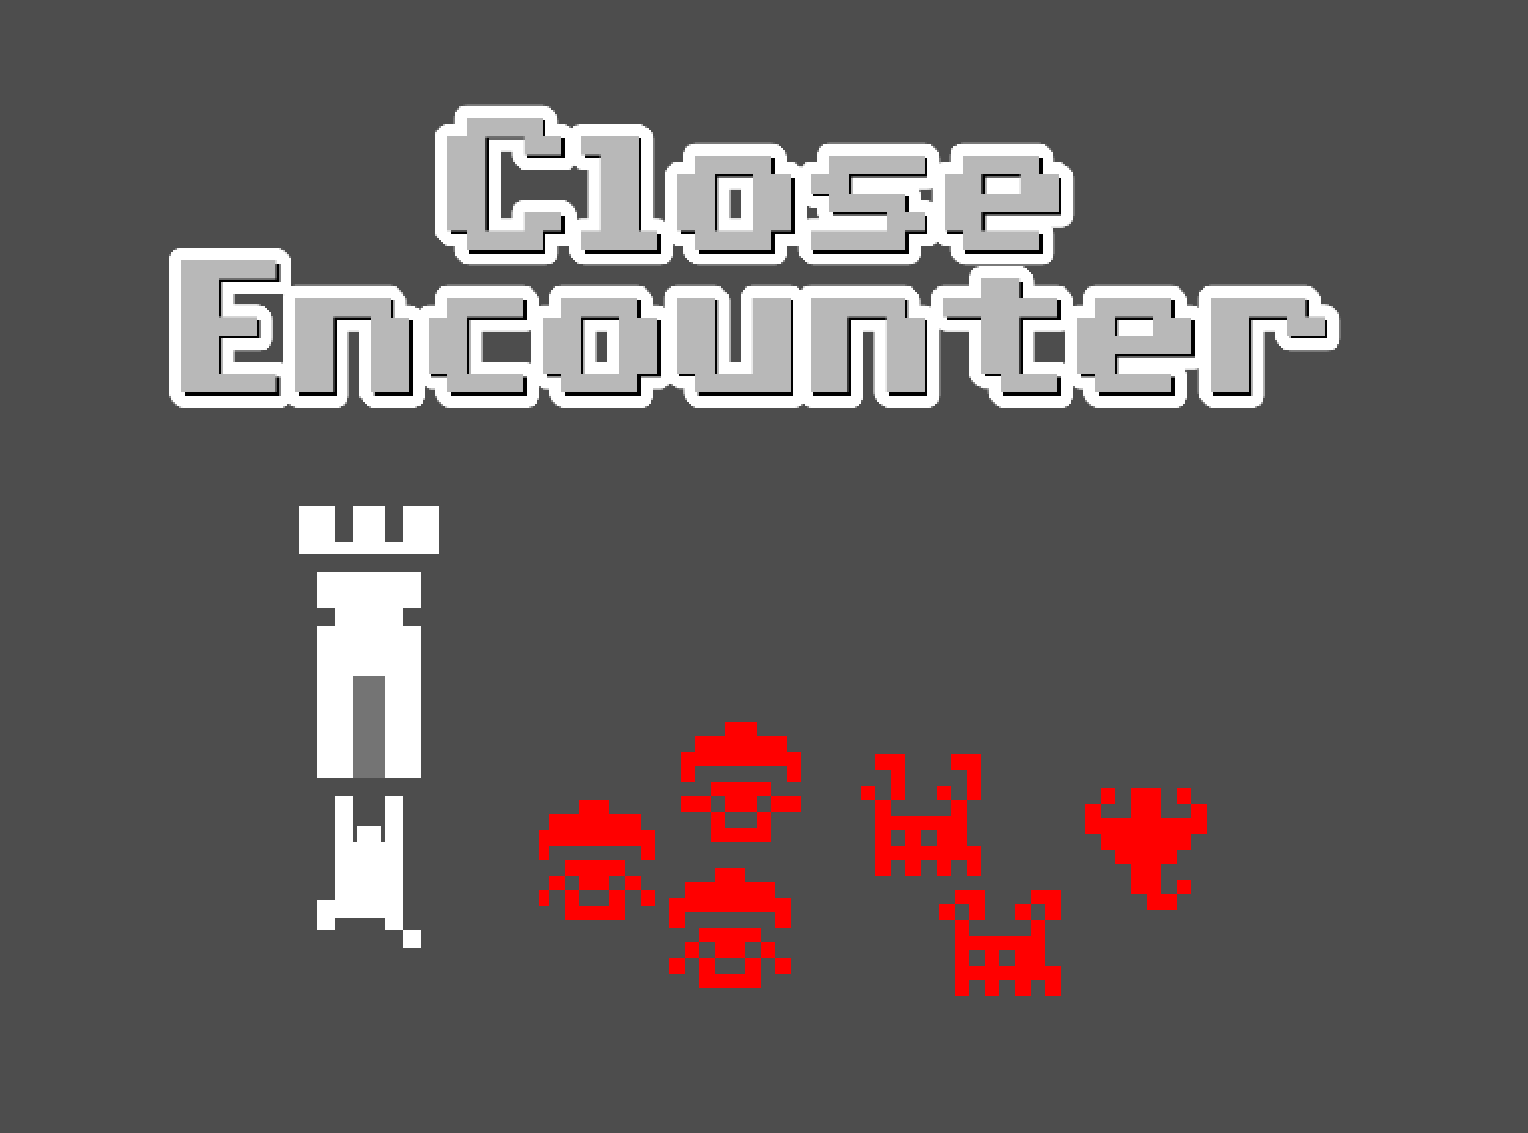 Close Encounter